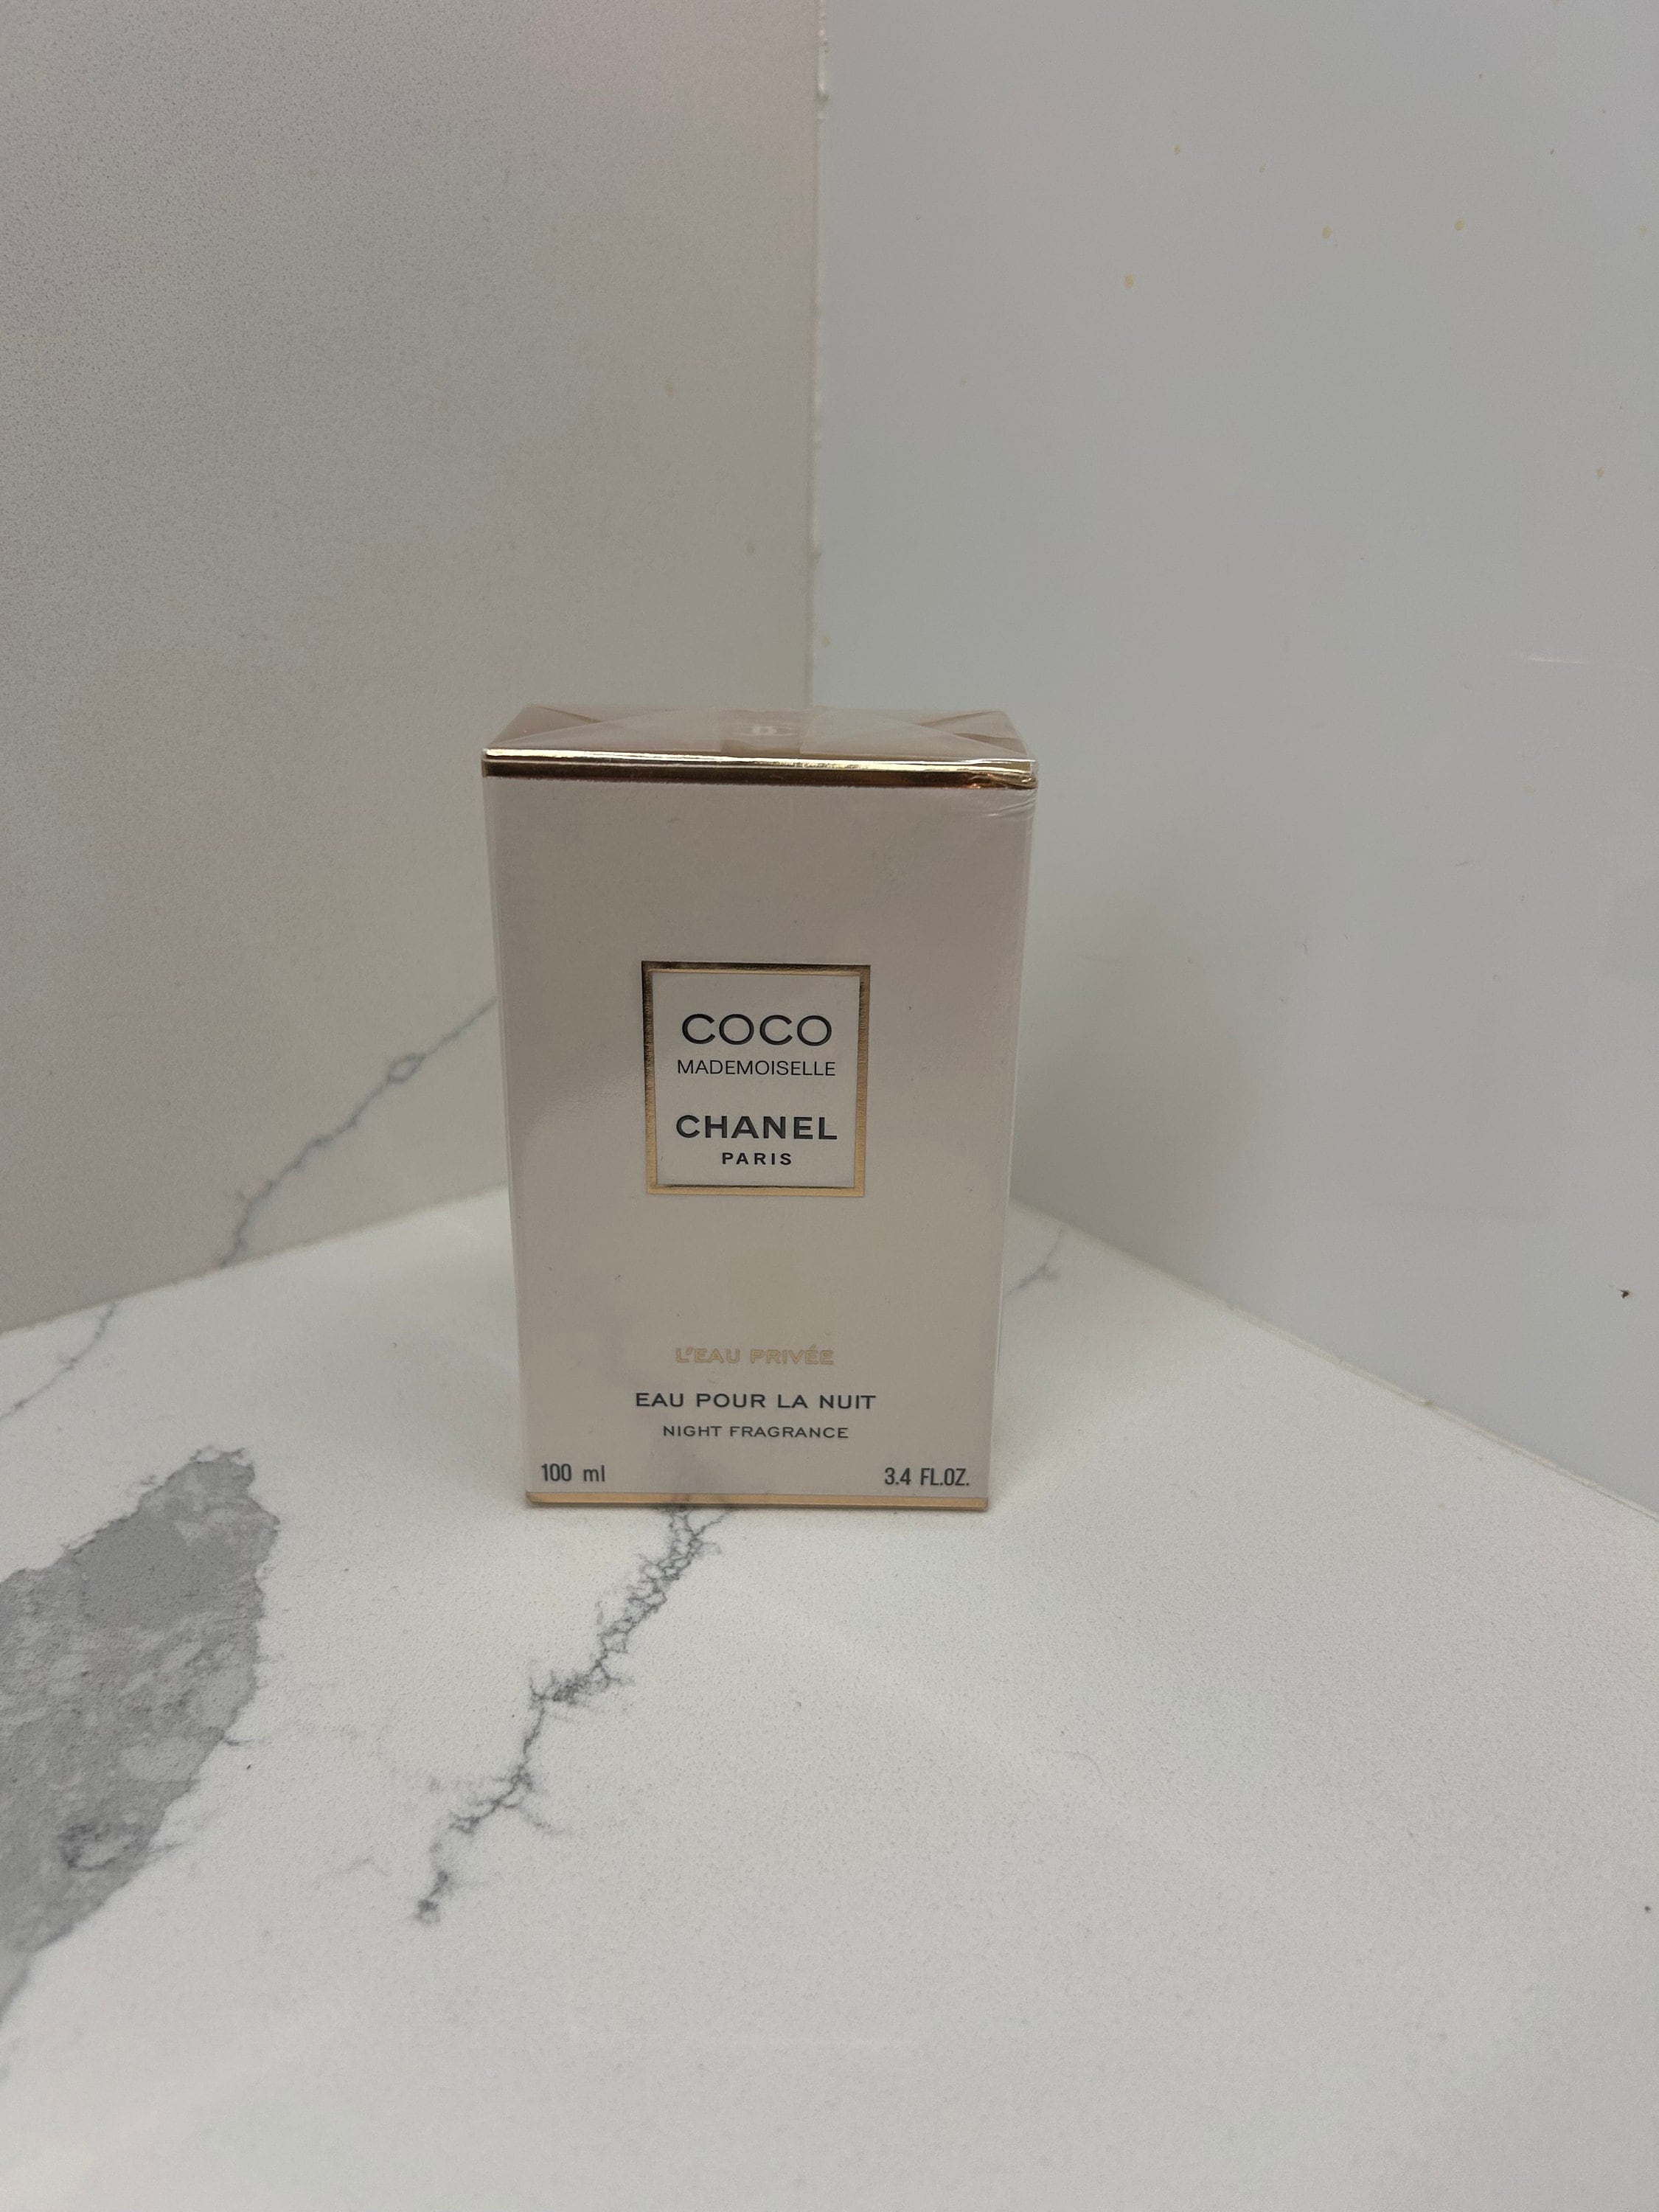 Chanel Coco Parfum 